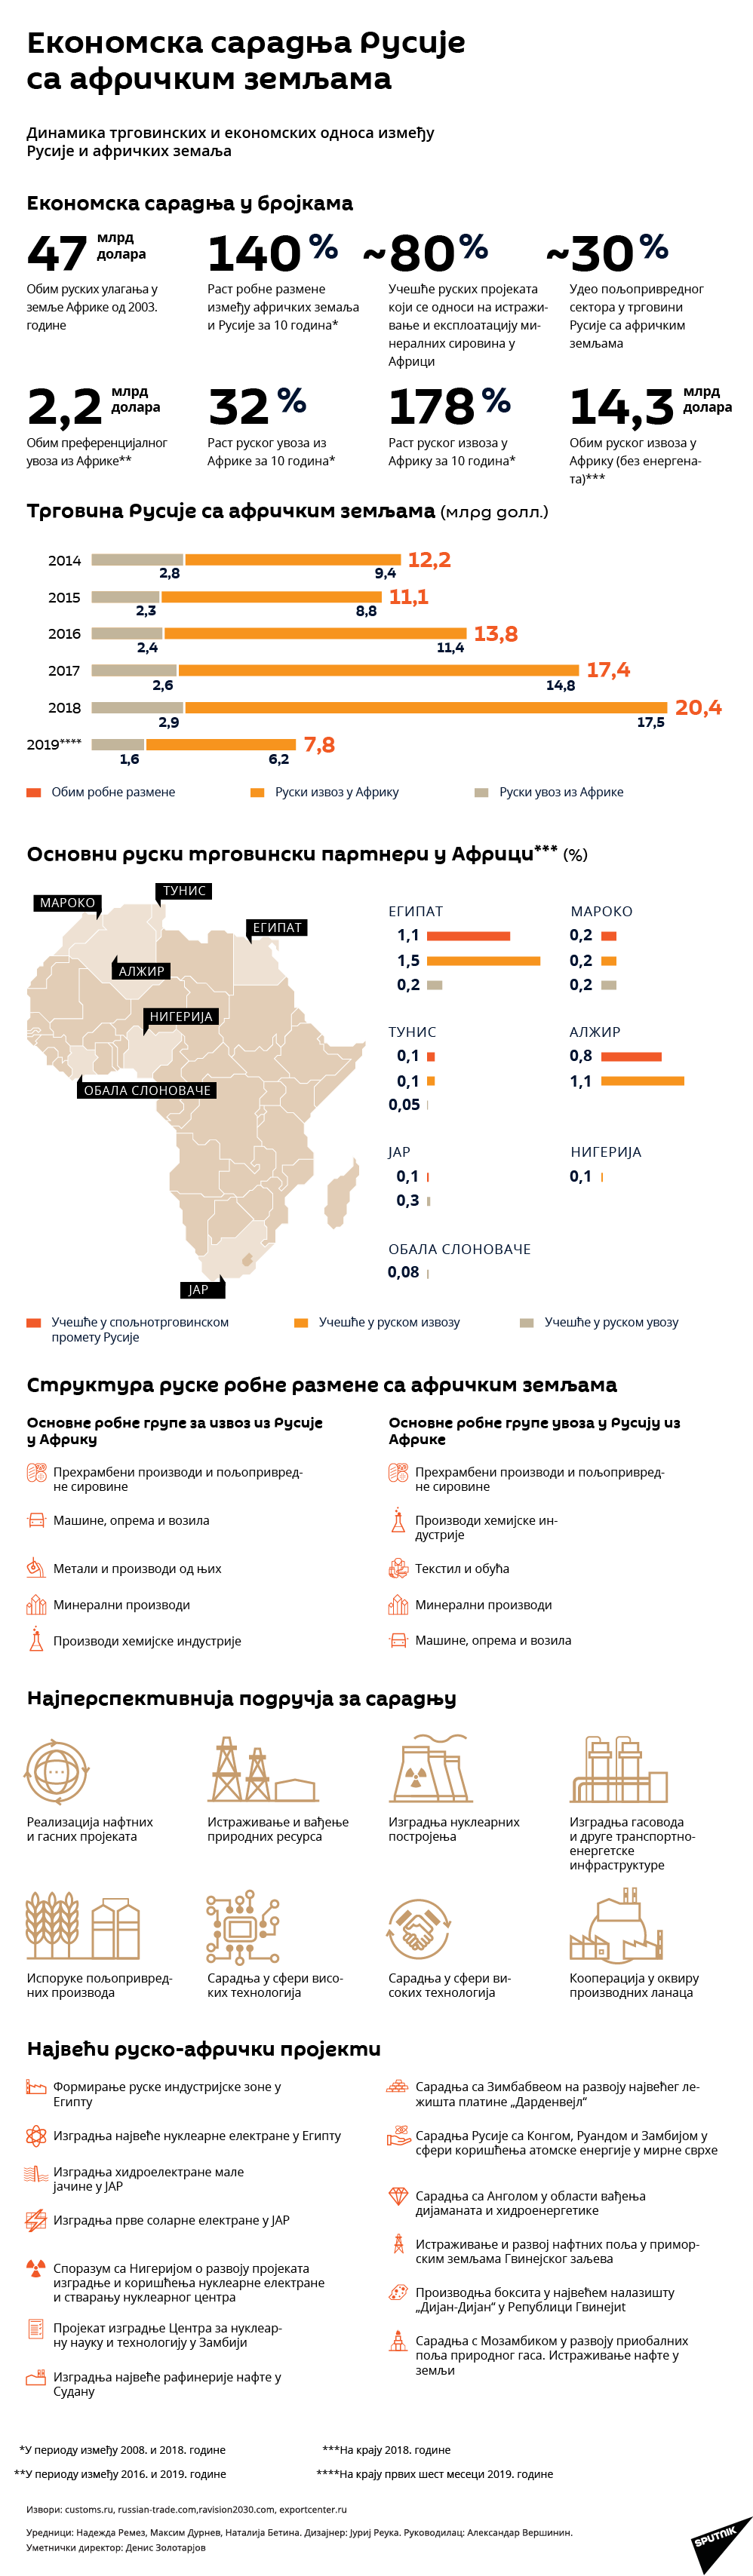 Економска сарадња Русије са афричким земљама - Sputnik Србија